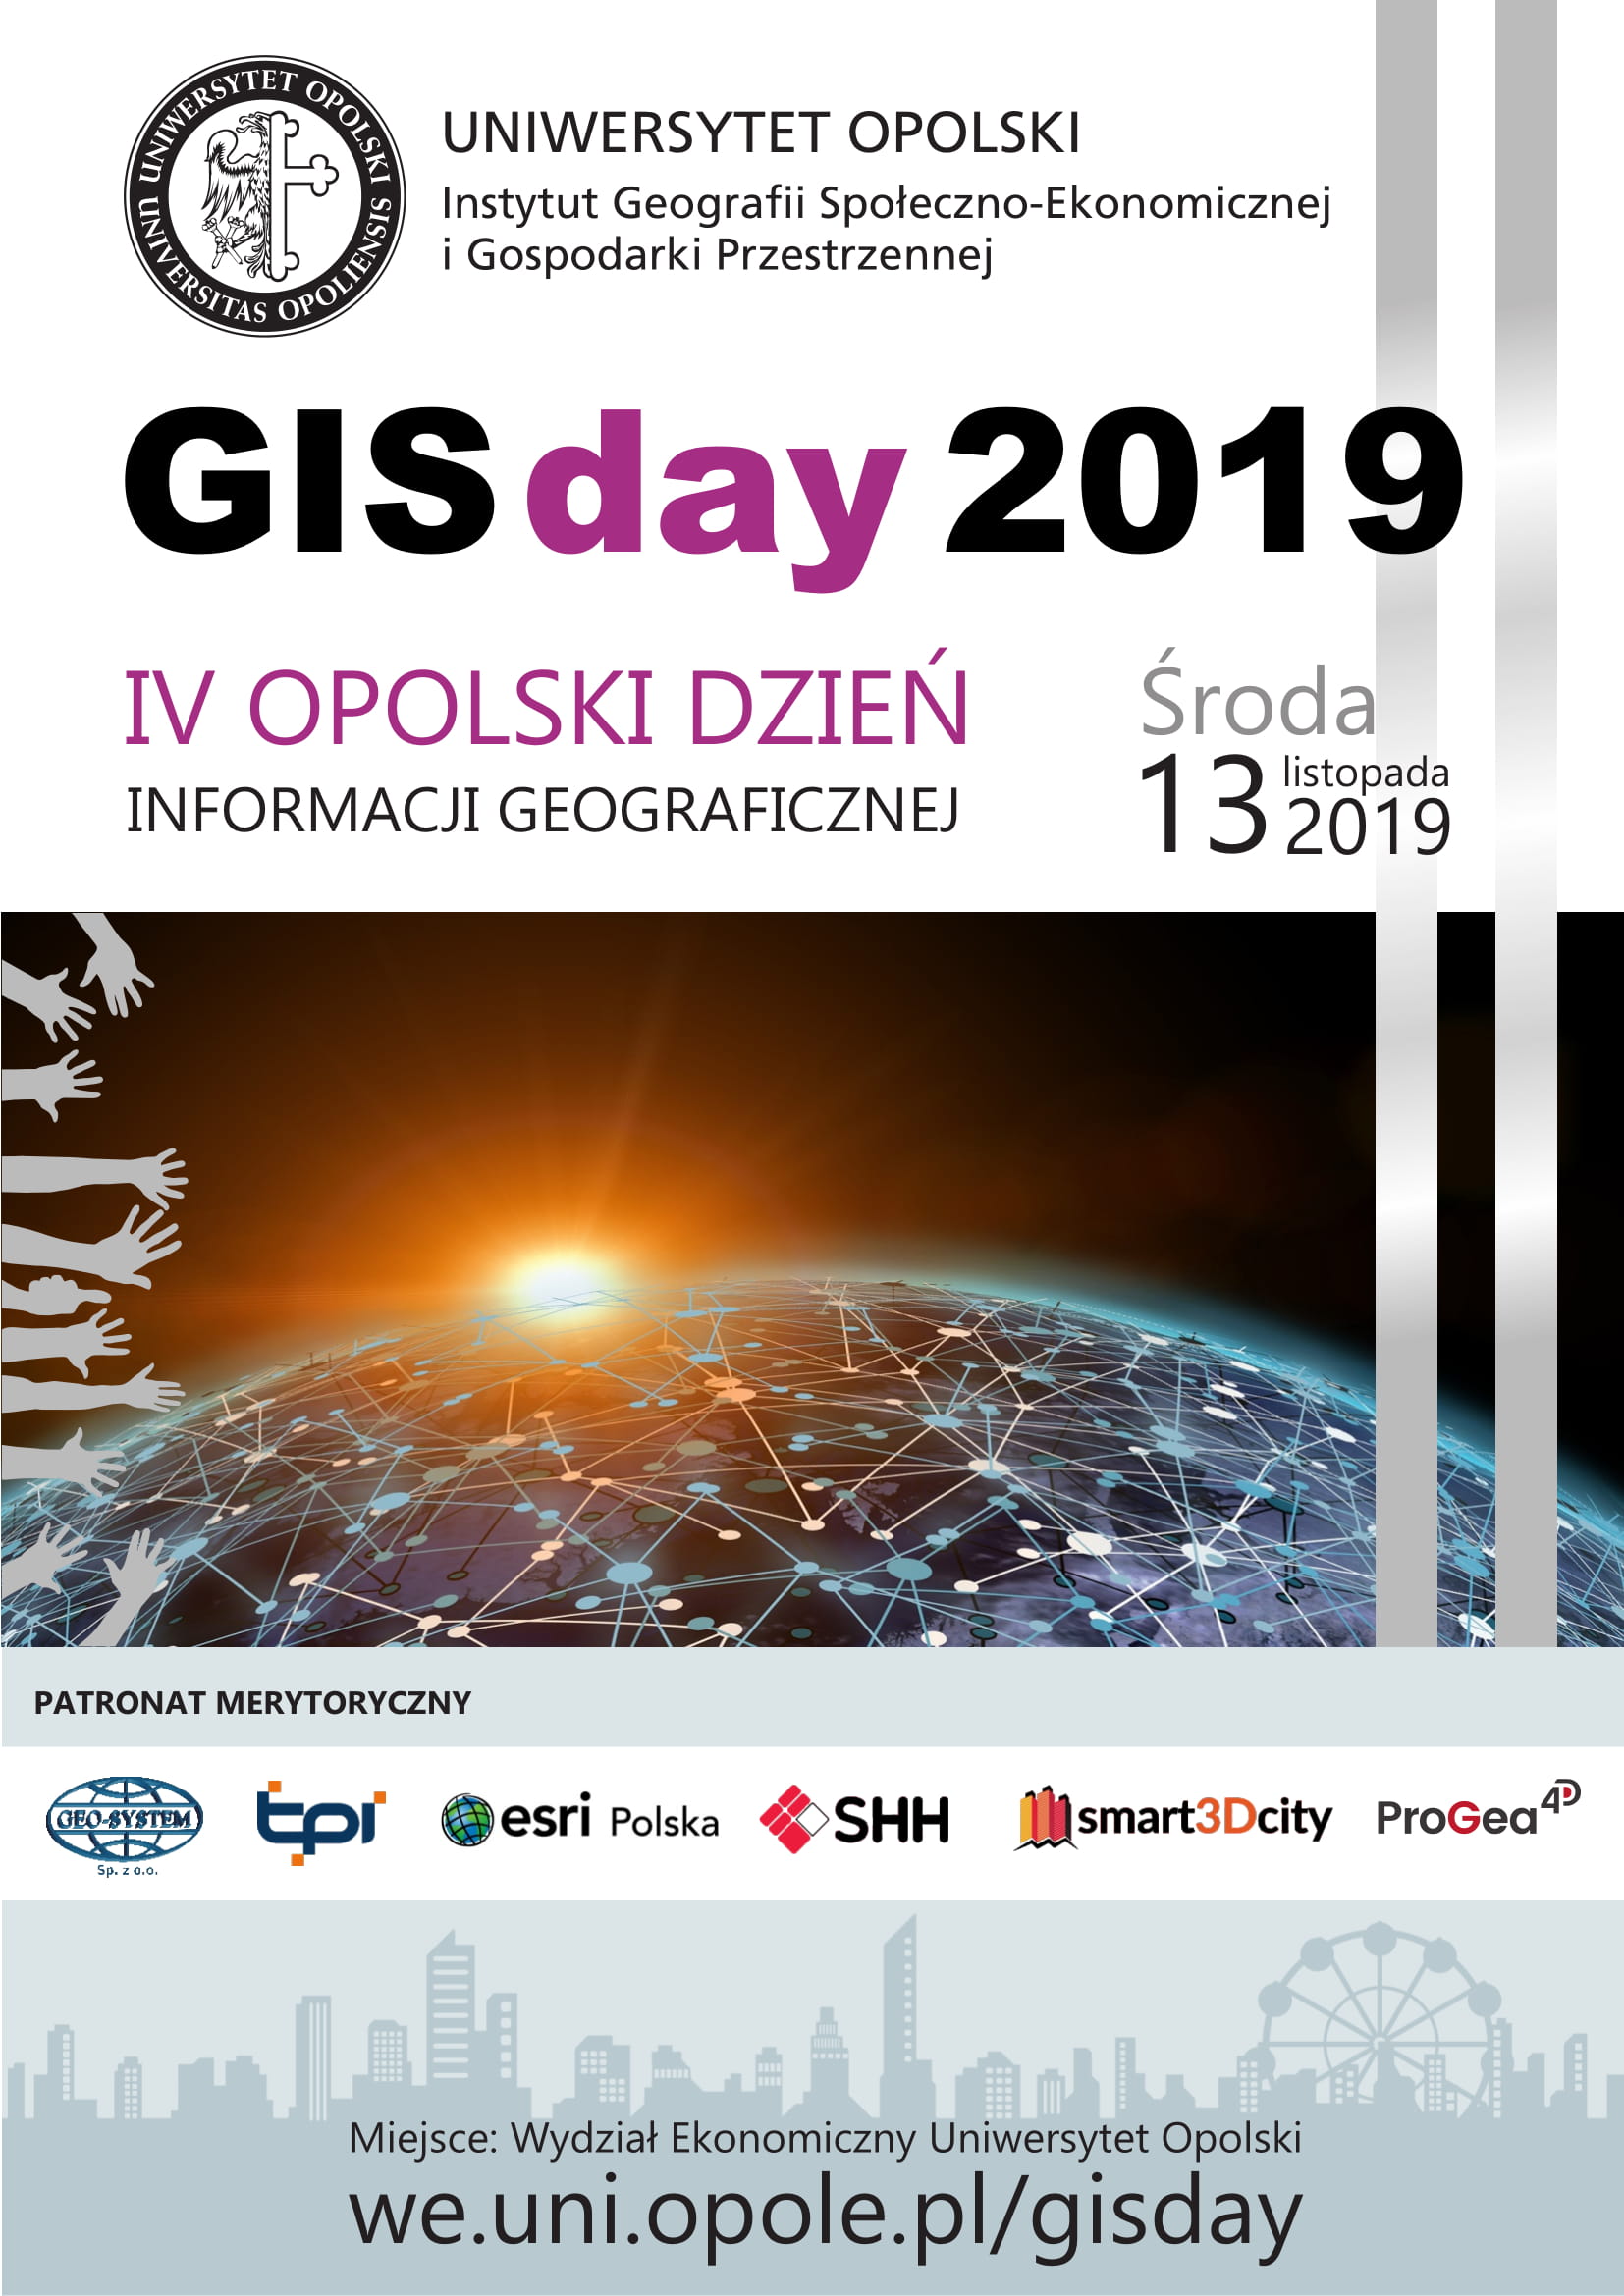 IV Opolski Dzień Informacji Geograficznej: seminarium i warsztaty